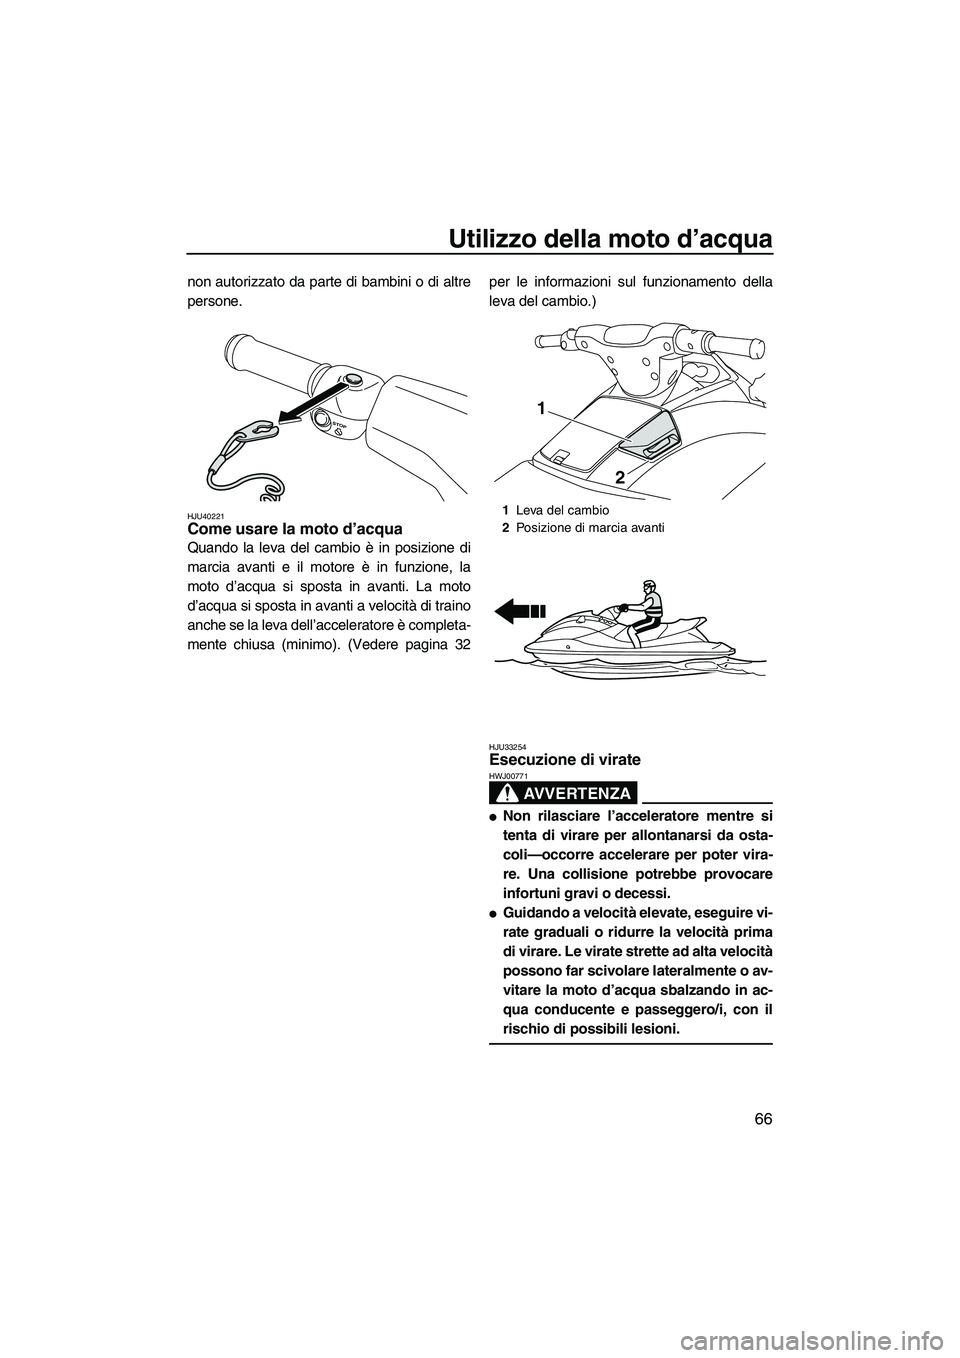 YAMAHA VXR 2013  Manuale duso (in Italian) Utilizzo della moto d’acqua
66
non autorizzato da parte di bambini o di altre
persone.
HJU40221Come usare la moto d’acqua 
Quando la leva del cambio è in posizione di
marcia avanti e il motore è